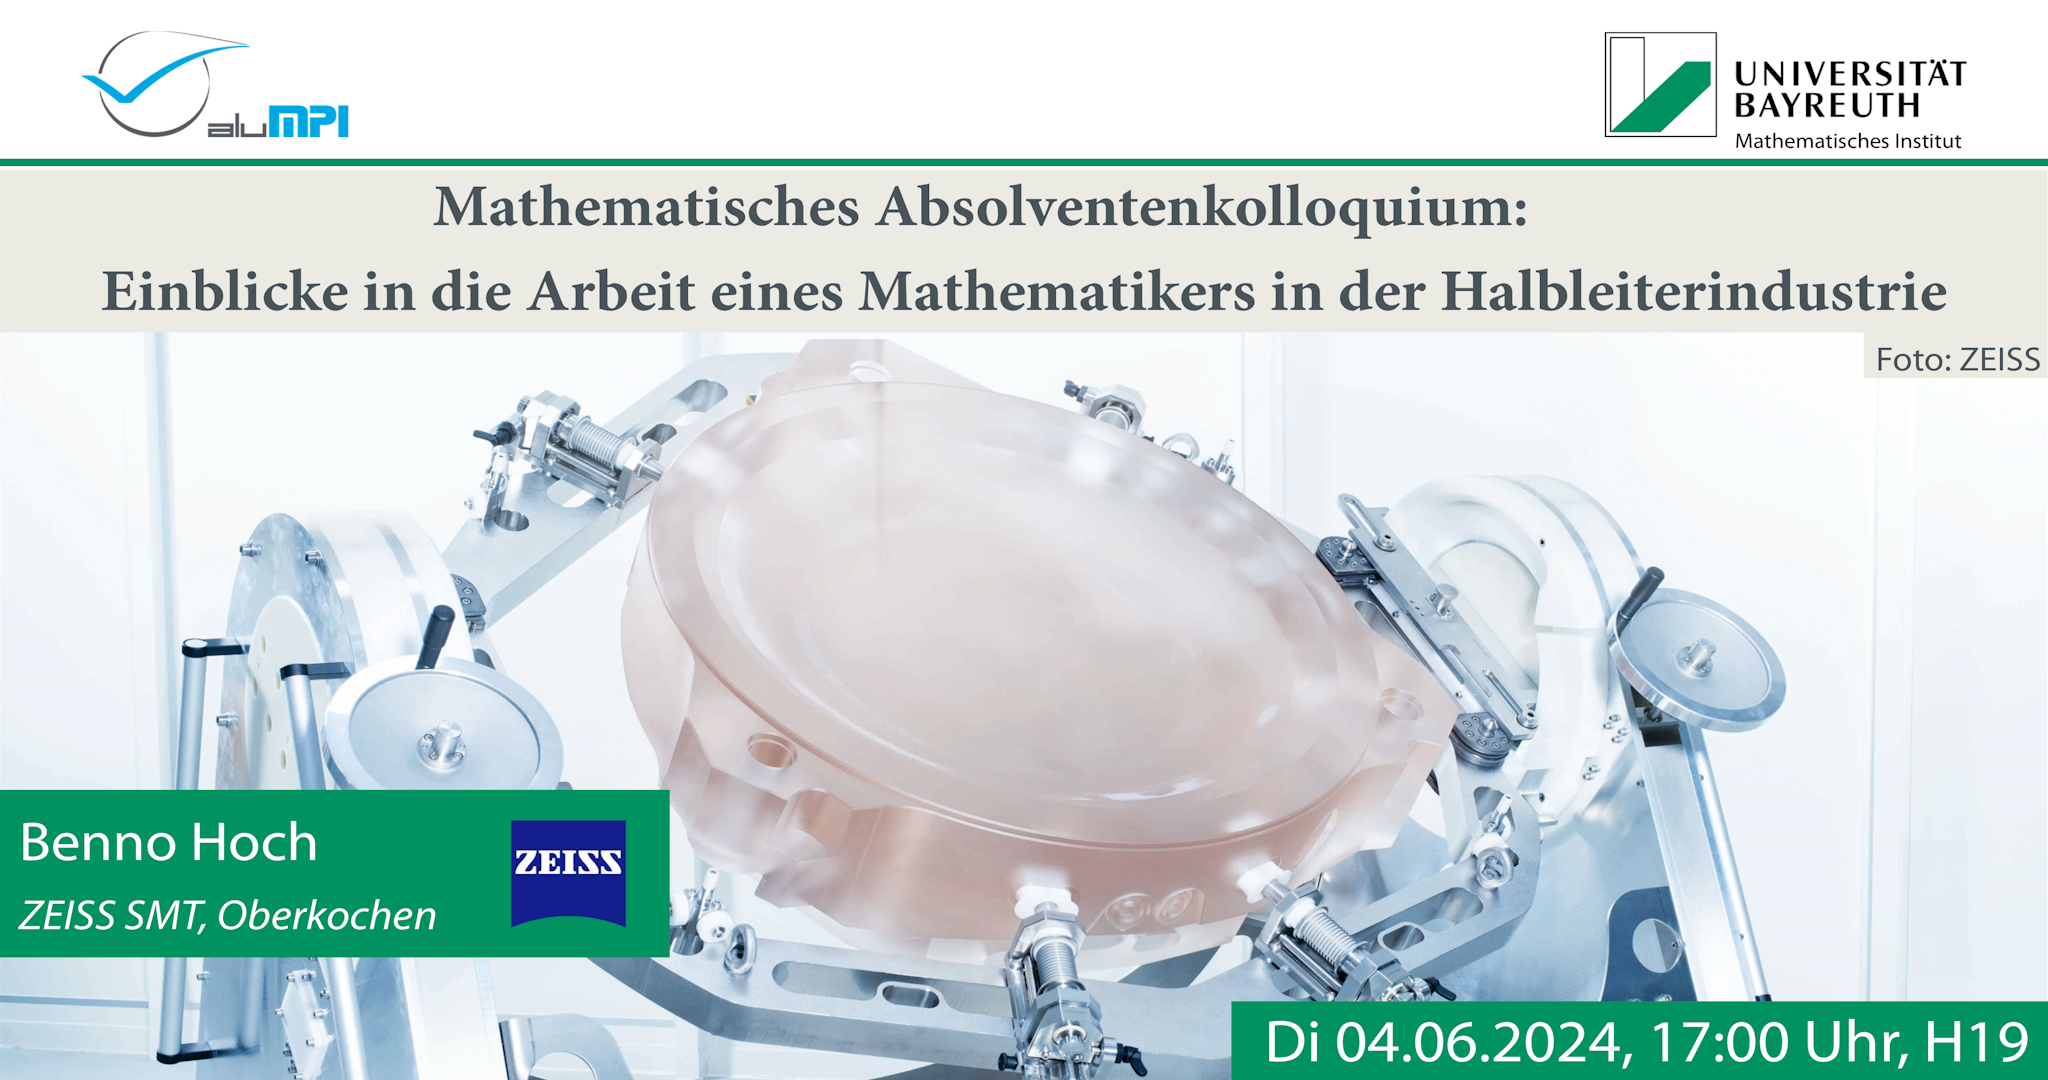 Erstes Mathematisches Kolloquium der Absolventen an der Universität Bayreuth